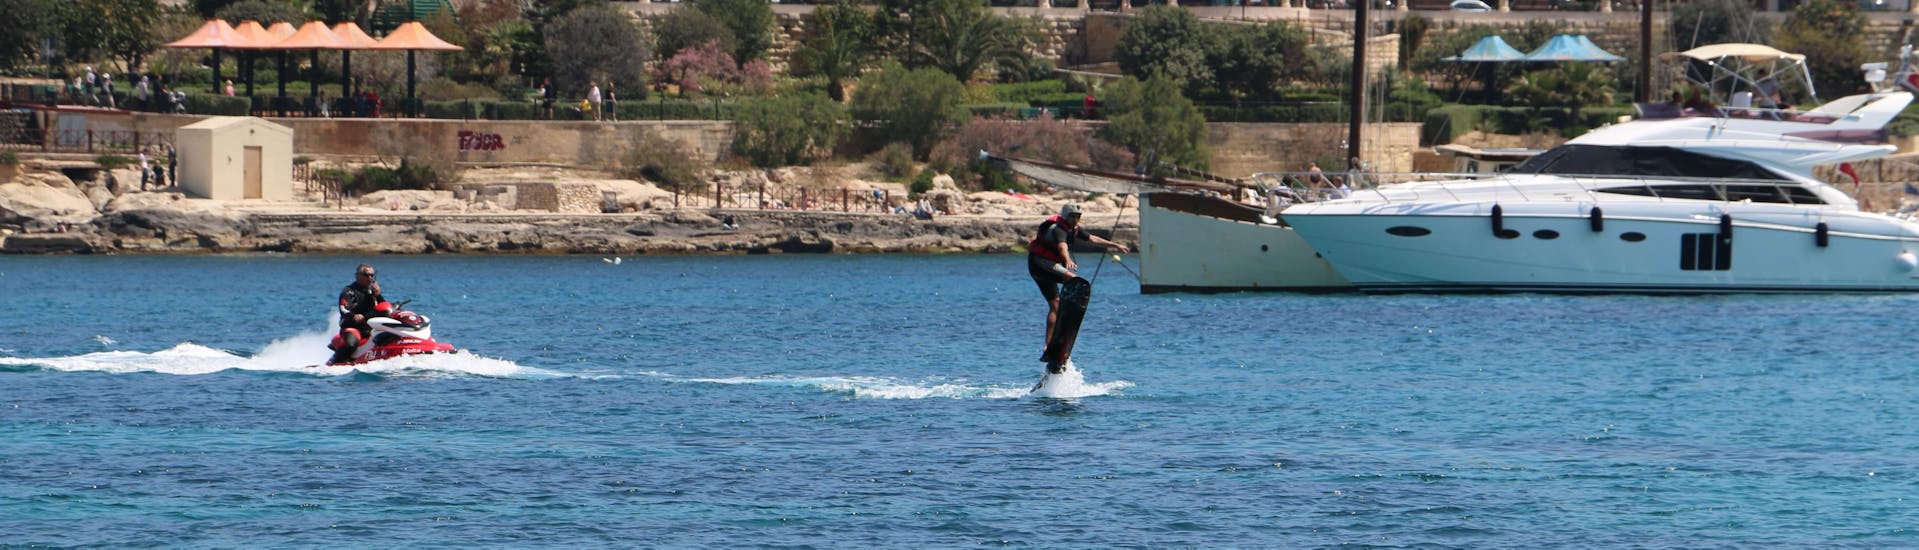 Hoverboard - Spinola Bay.